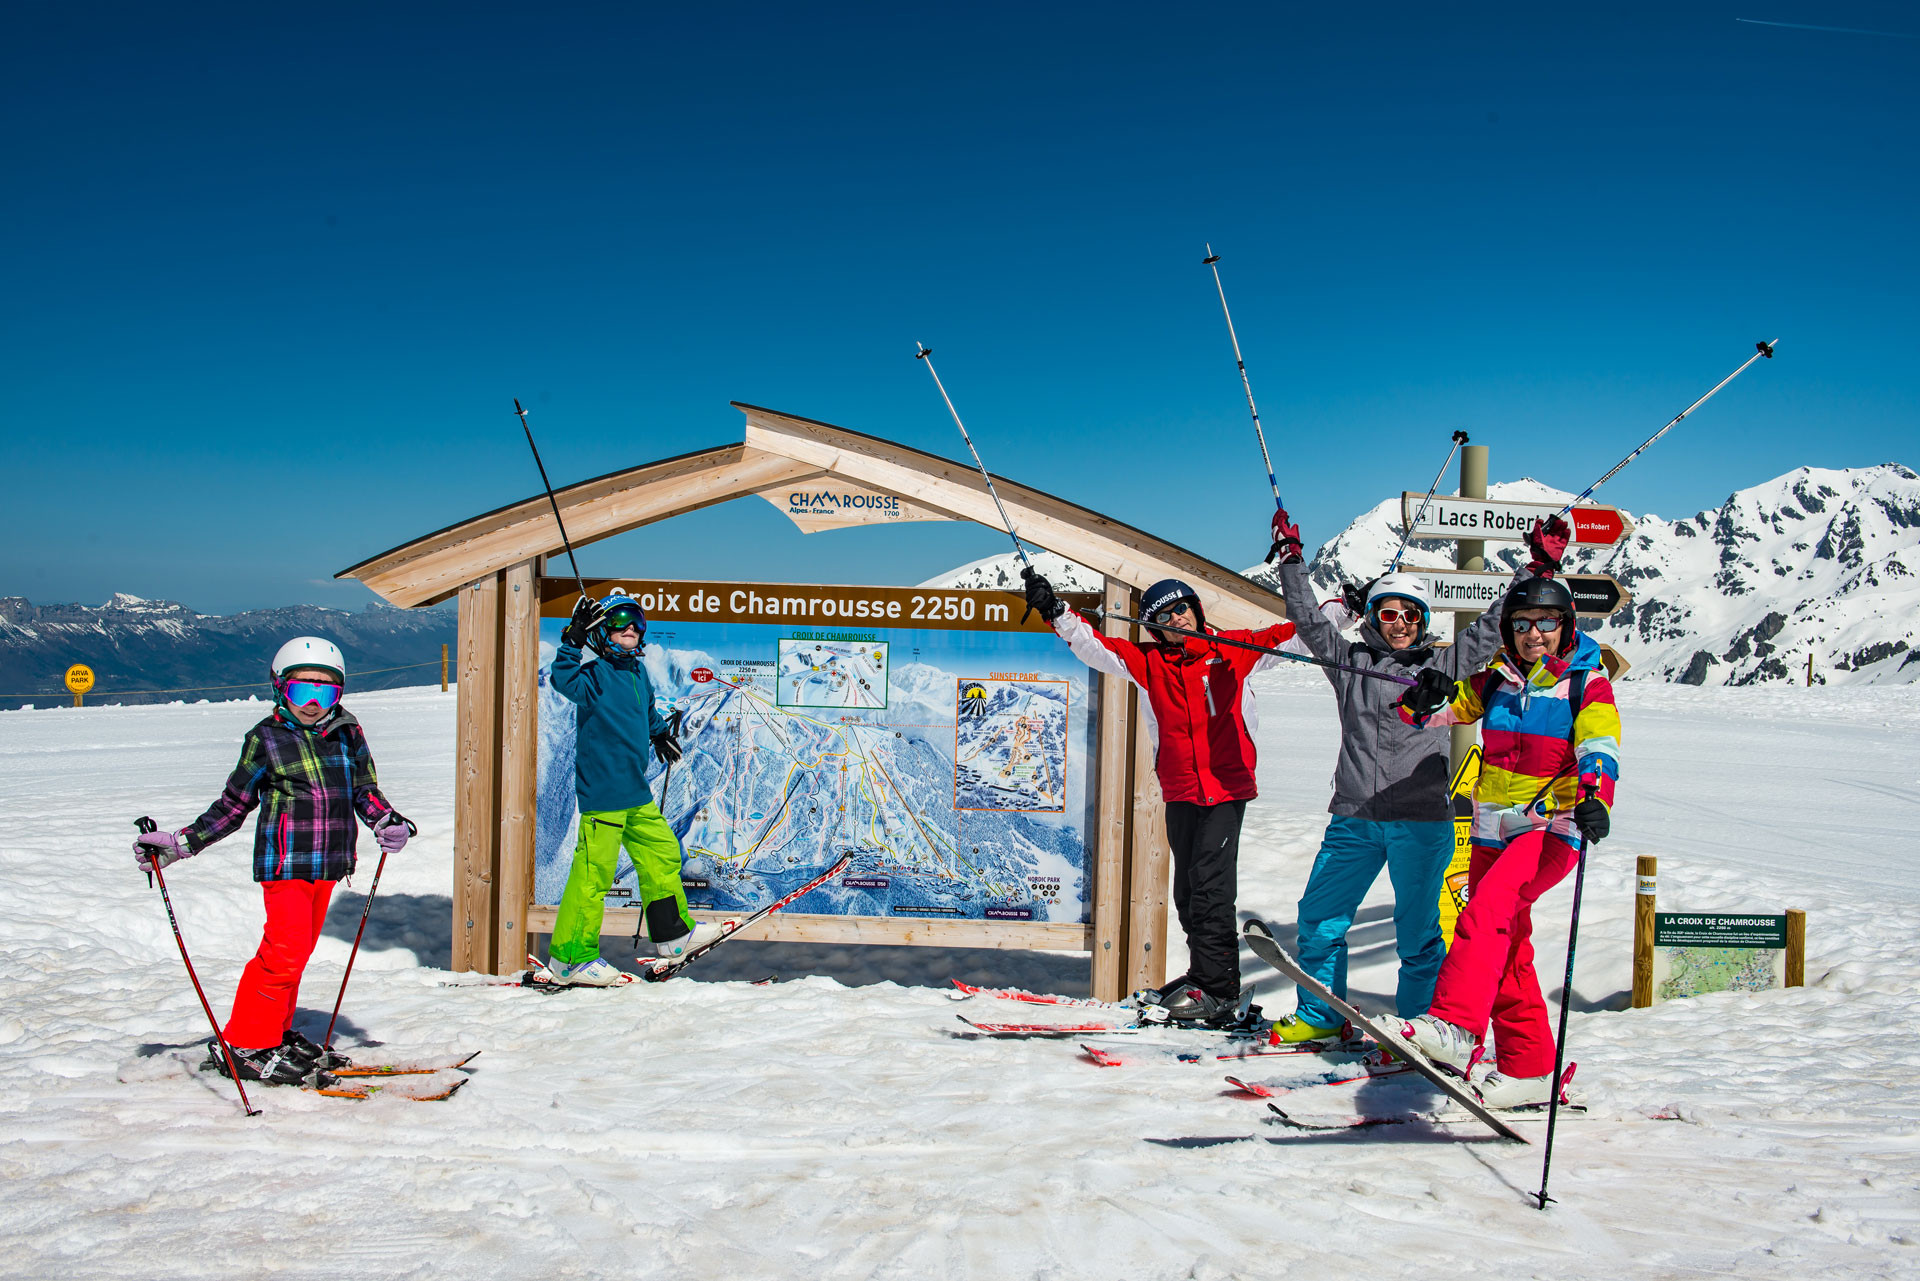 Chamrousse alpine ski resort grenoble isere french alps france